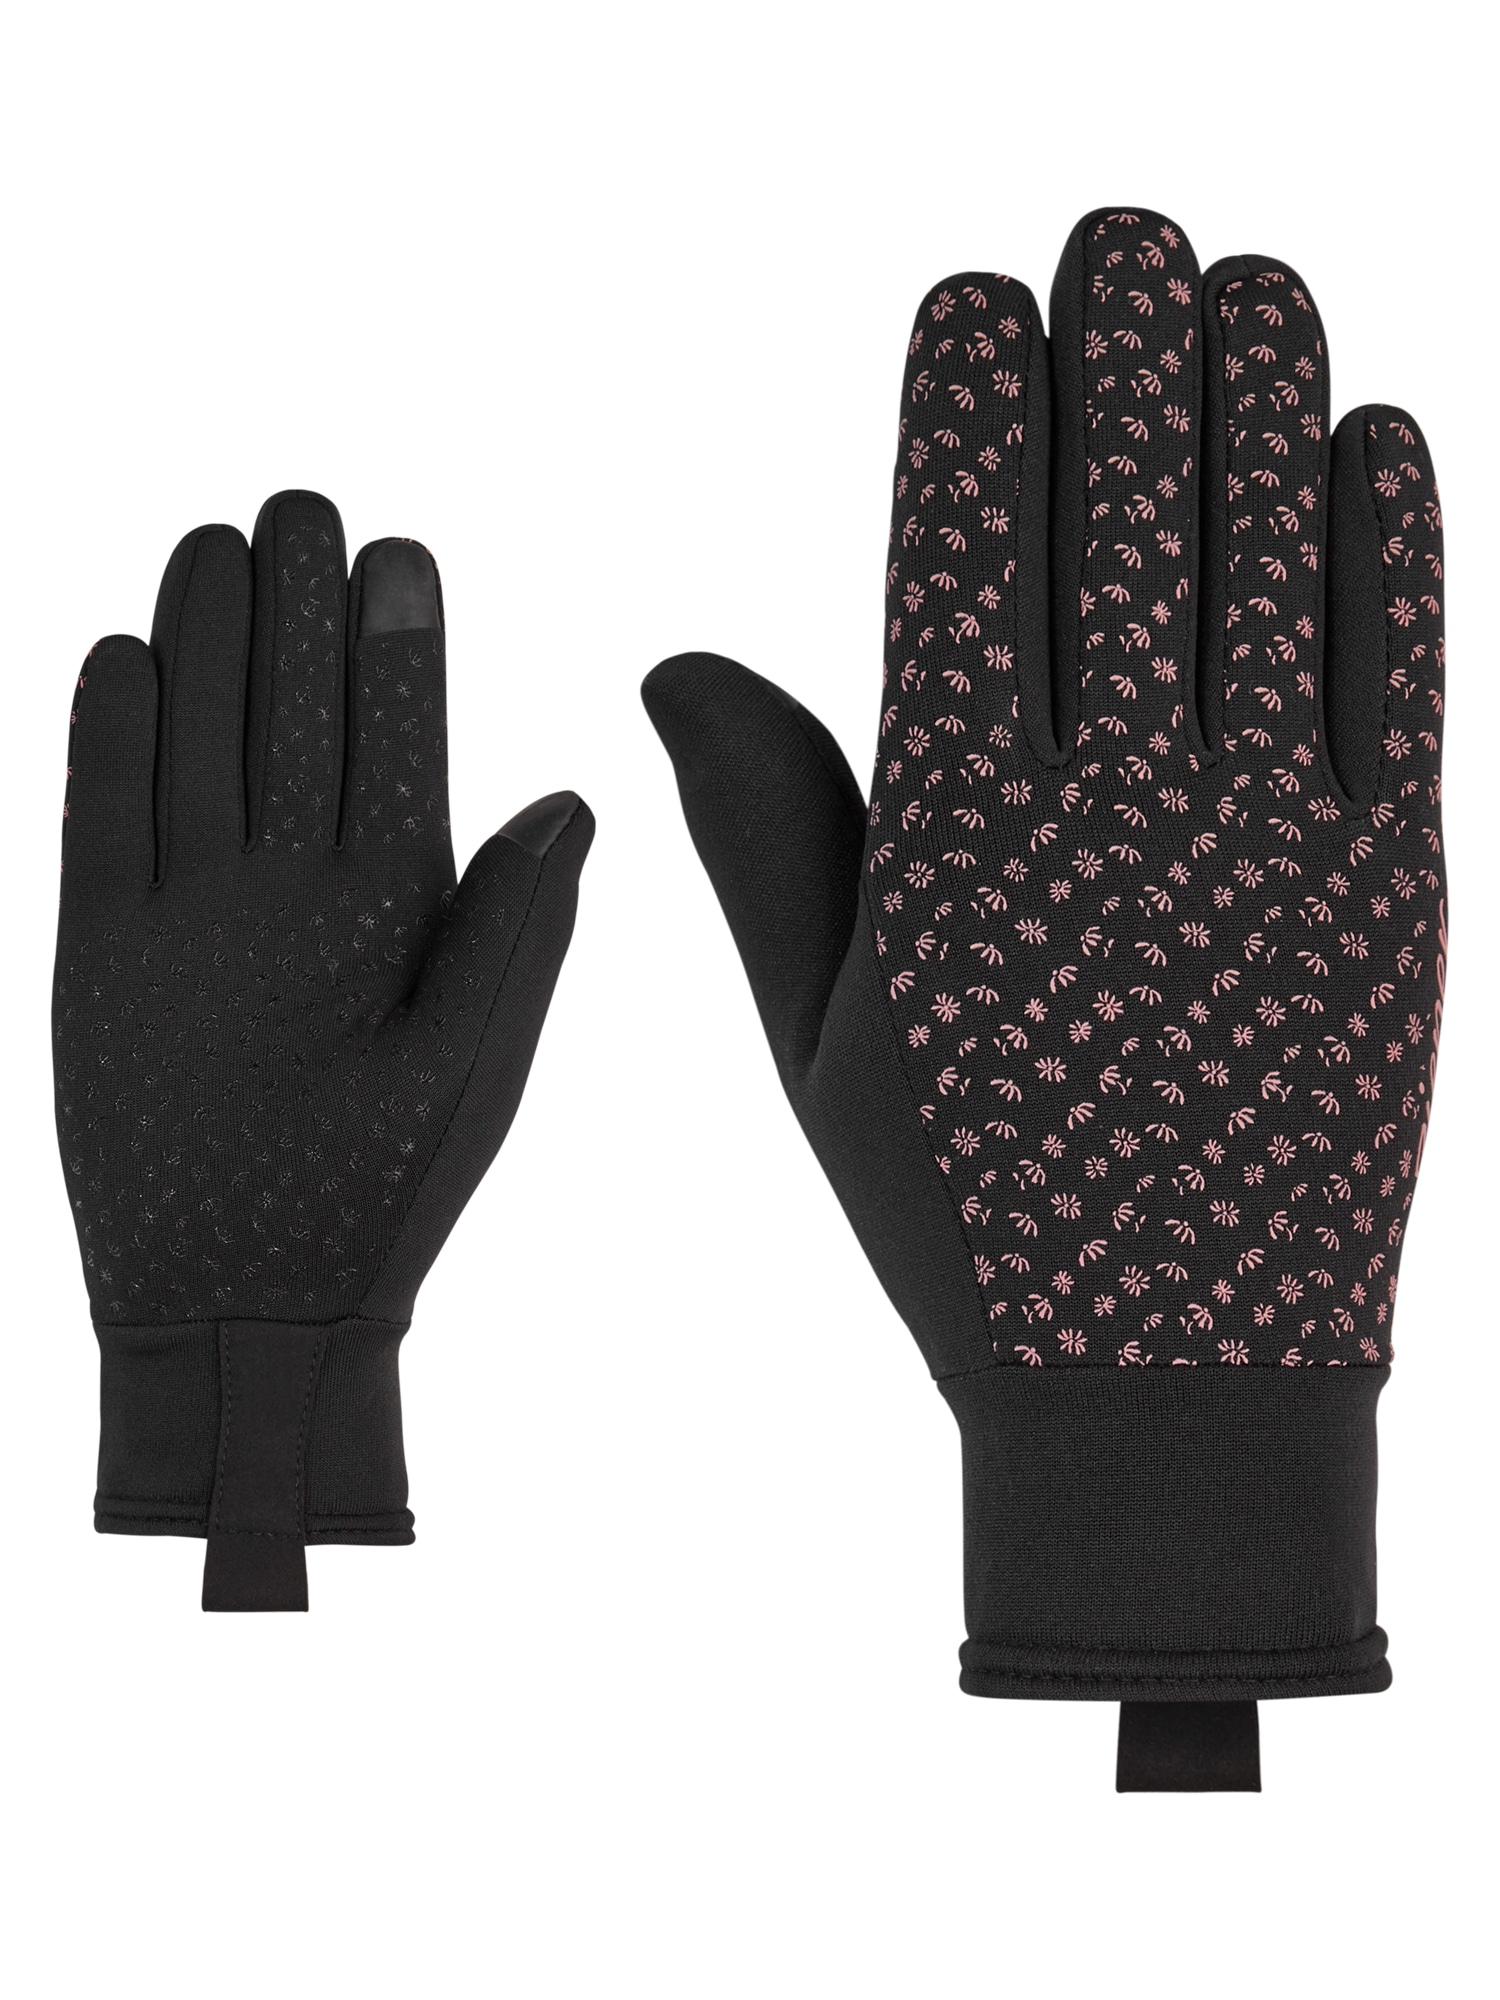 Handschuhe für Damen online kaufen | Handschuh bei Ackermann